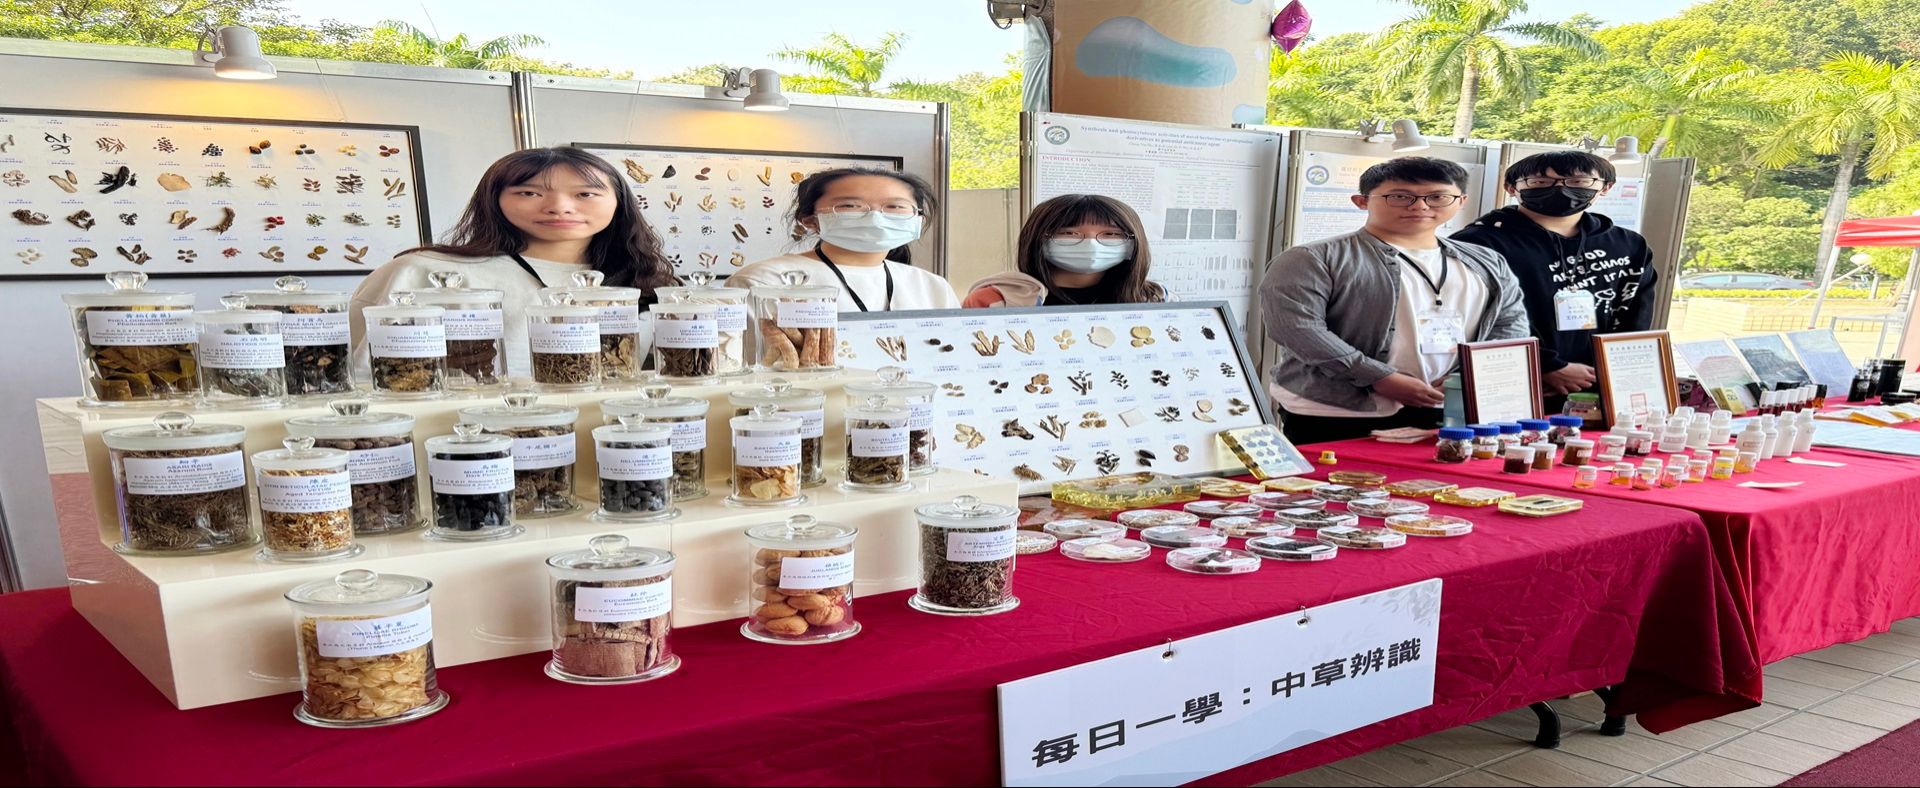 台灣中醫藥產業趨勢論壇活動，微藥系展出中草藥樣本